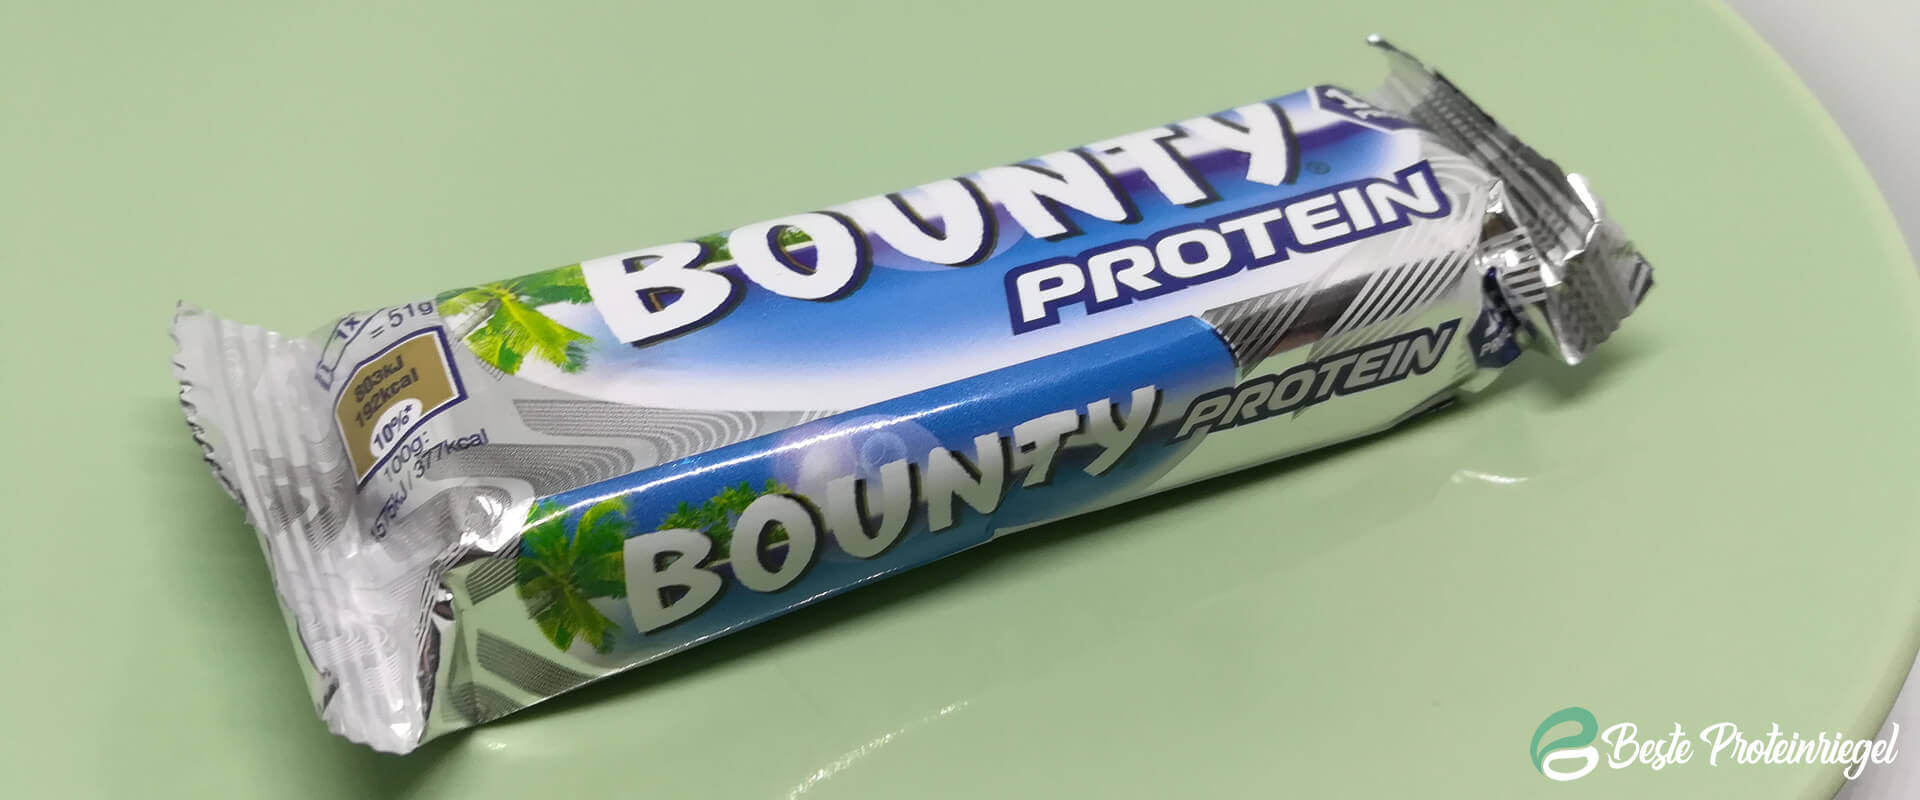 Bounty Protein Riegel Testbericht